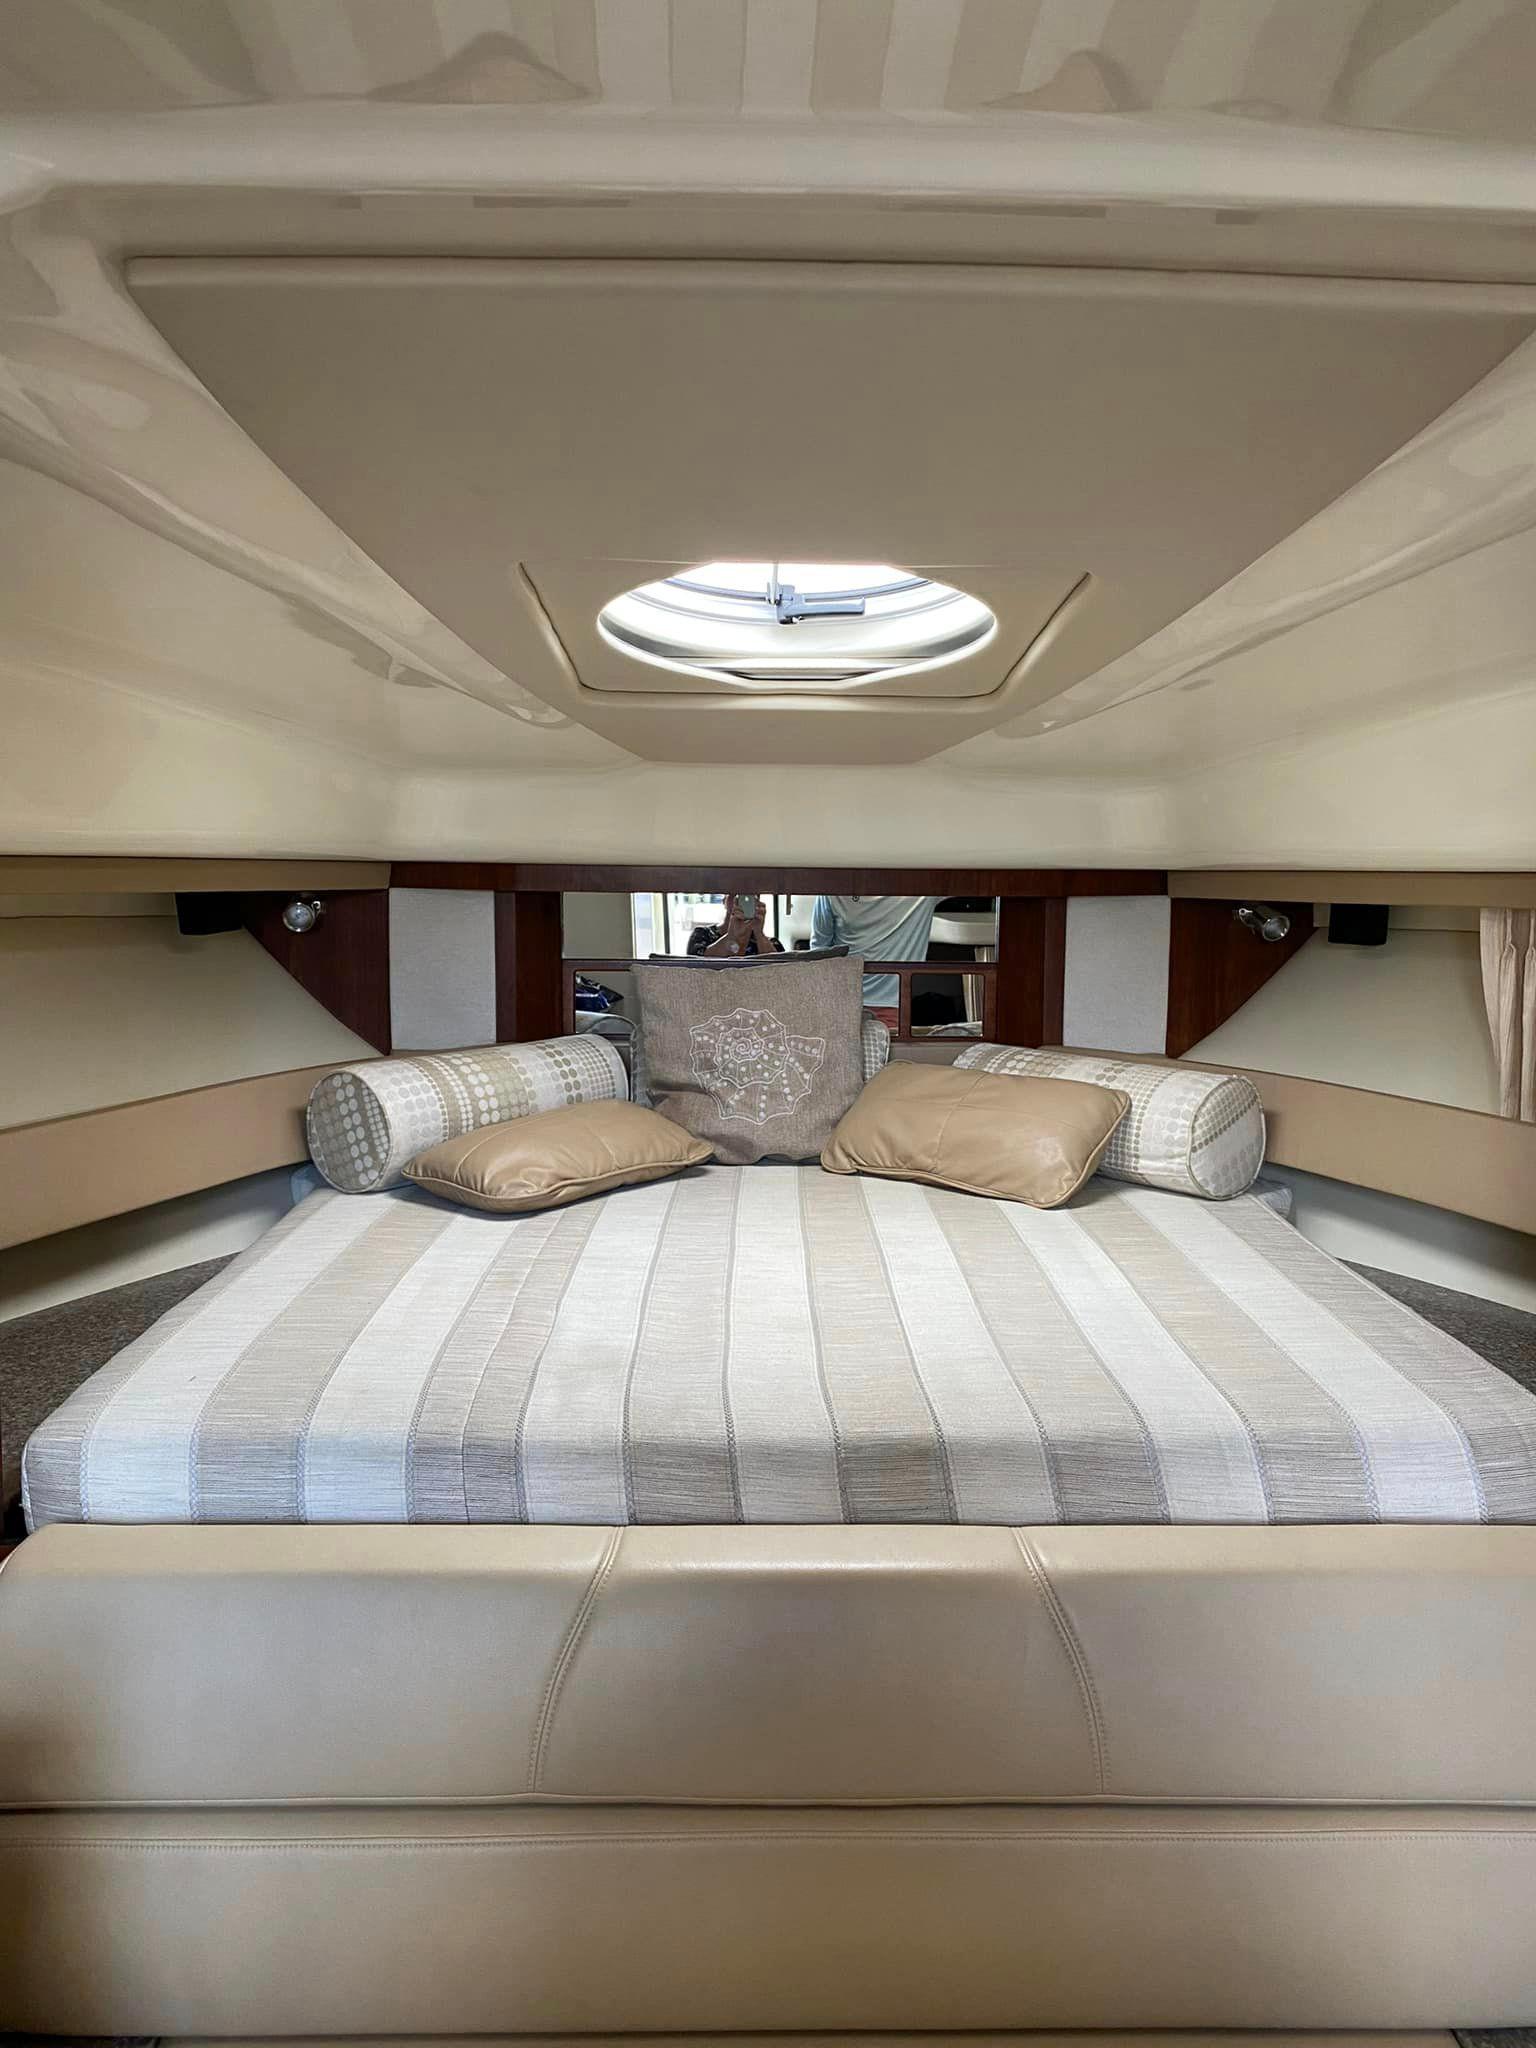 2014 Monterey 340 Sport Yacht